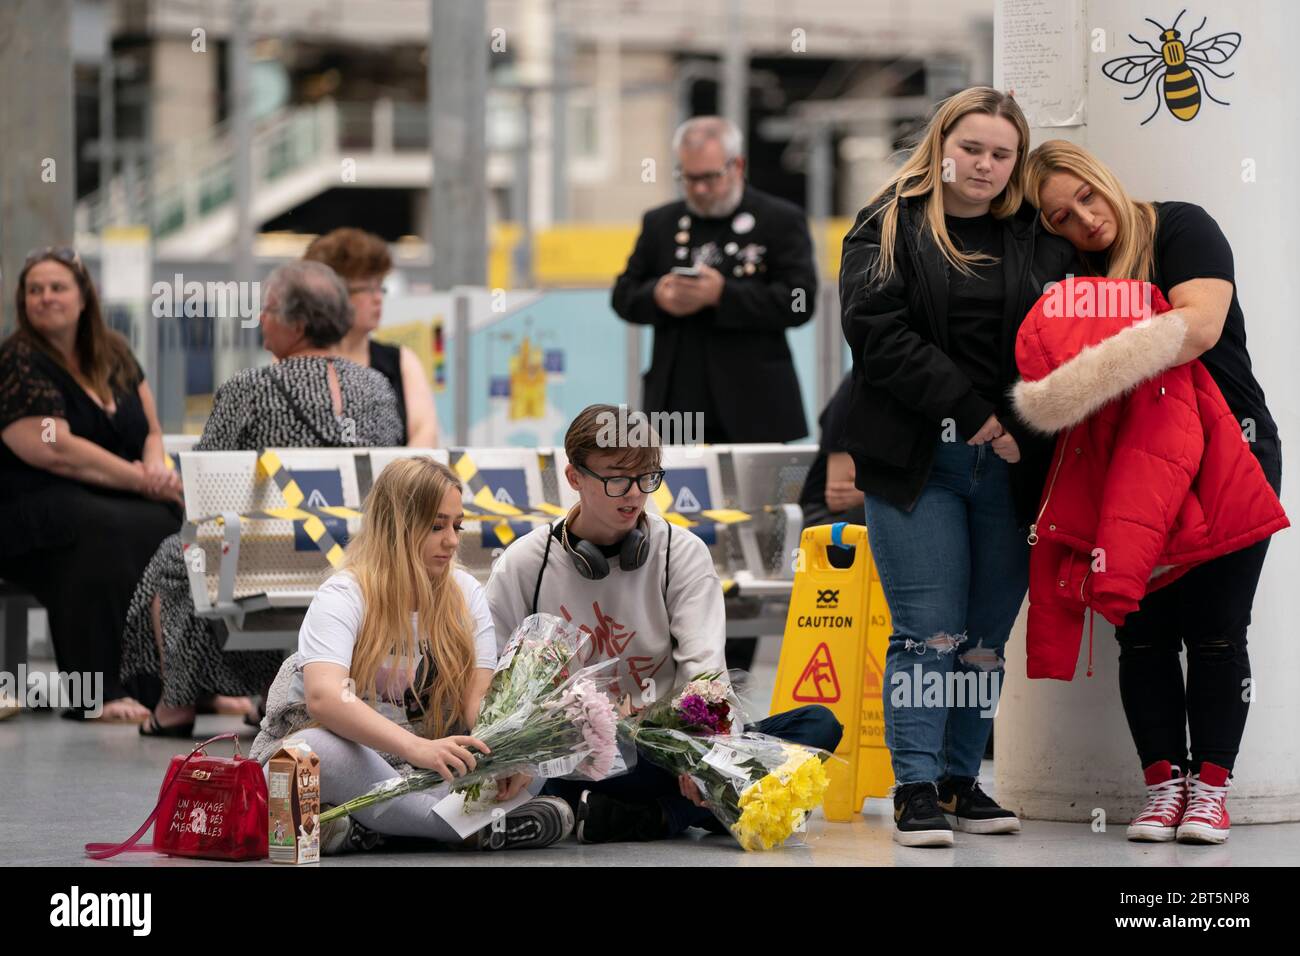 Manchester, Mai 22. Mai 2017. Peoplpe trauert bei einem Gedenkort des Angriffs auf die Manchester Arena in Manchester, Großbritannien, 22. Mai 2020. Manchester am Freitag war der dritte Jahrestag des Terroranschlags, bei dem 22 Menschen getötet und Hunderte verletzt wurden. Der Angriff geschah, als Salman Abedi am Ende eines Konzerts der US-Popsängerin Ariana Grande am 22. Mai 2017 eine Bombe zündete. Kredit: Jon Super/Xinhua/Alamy Live News Stockfoto